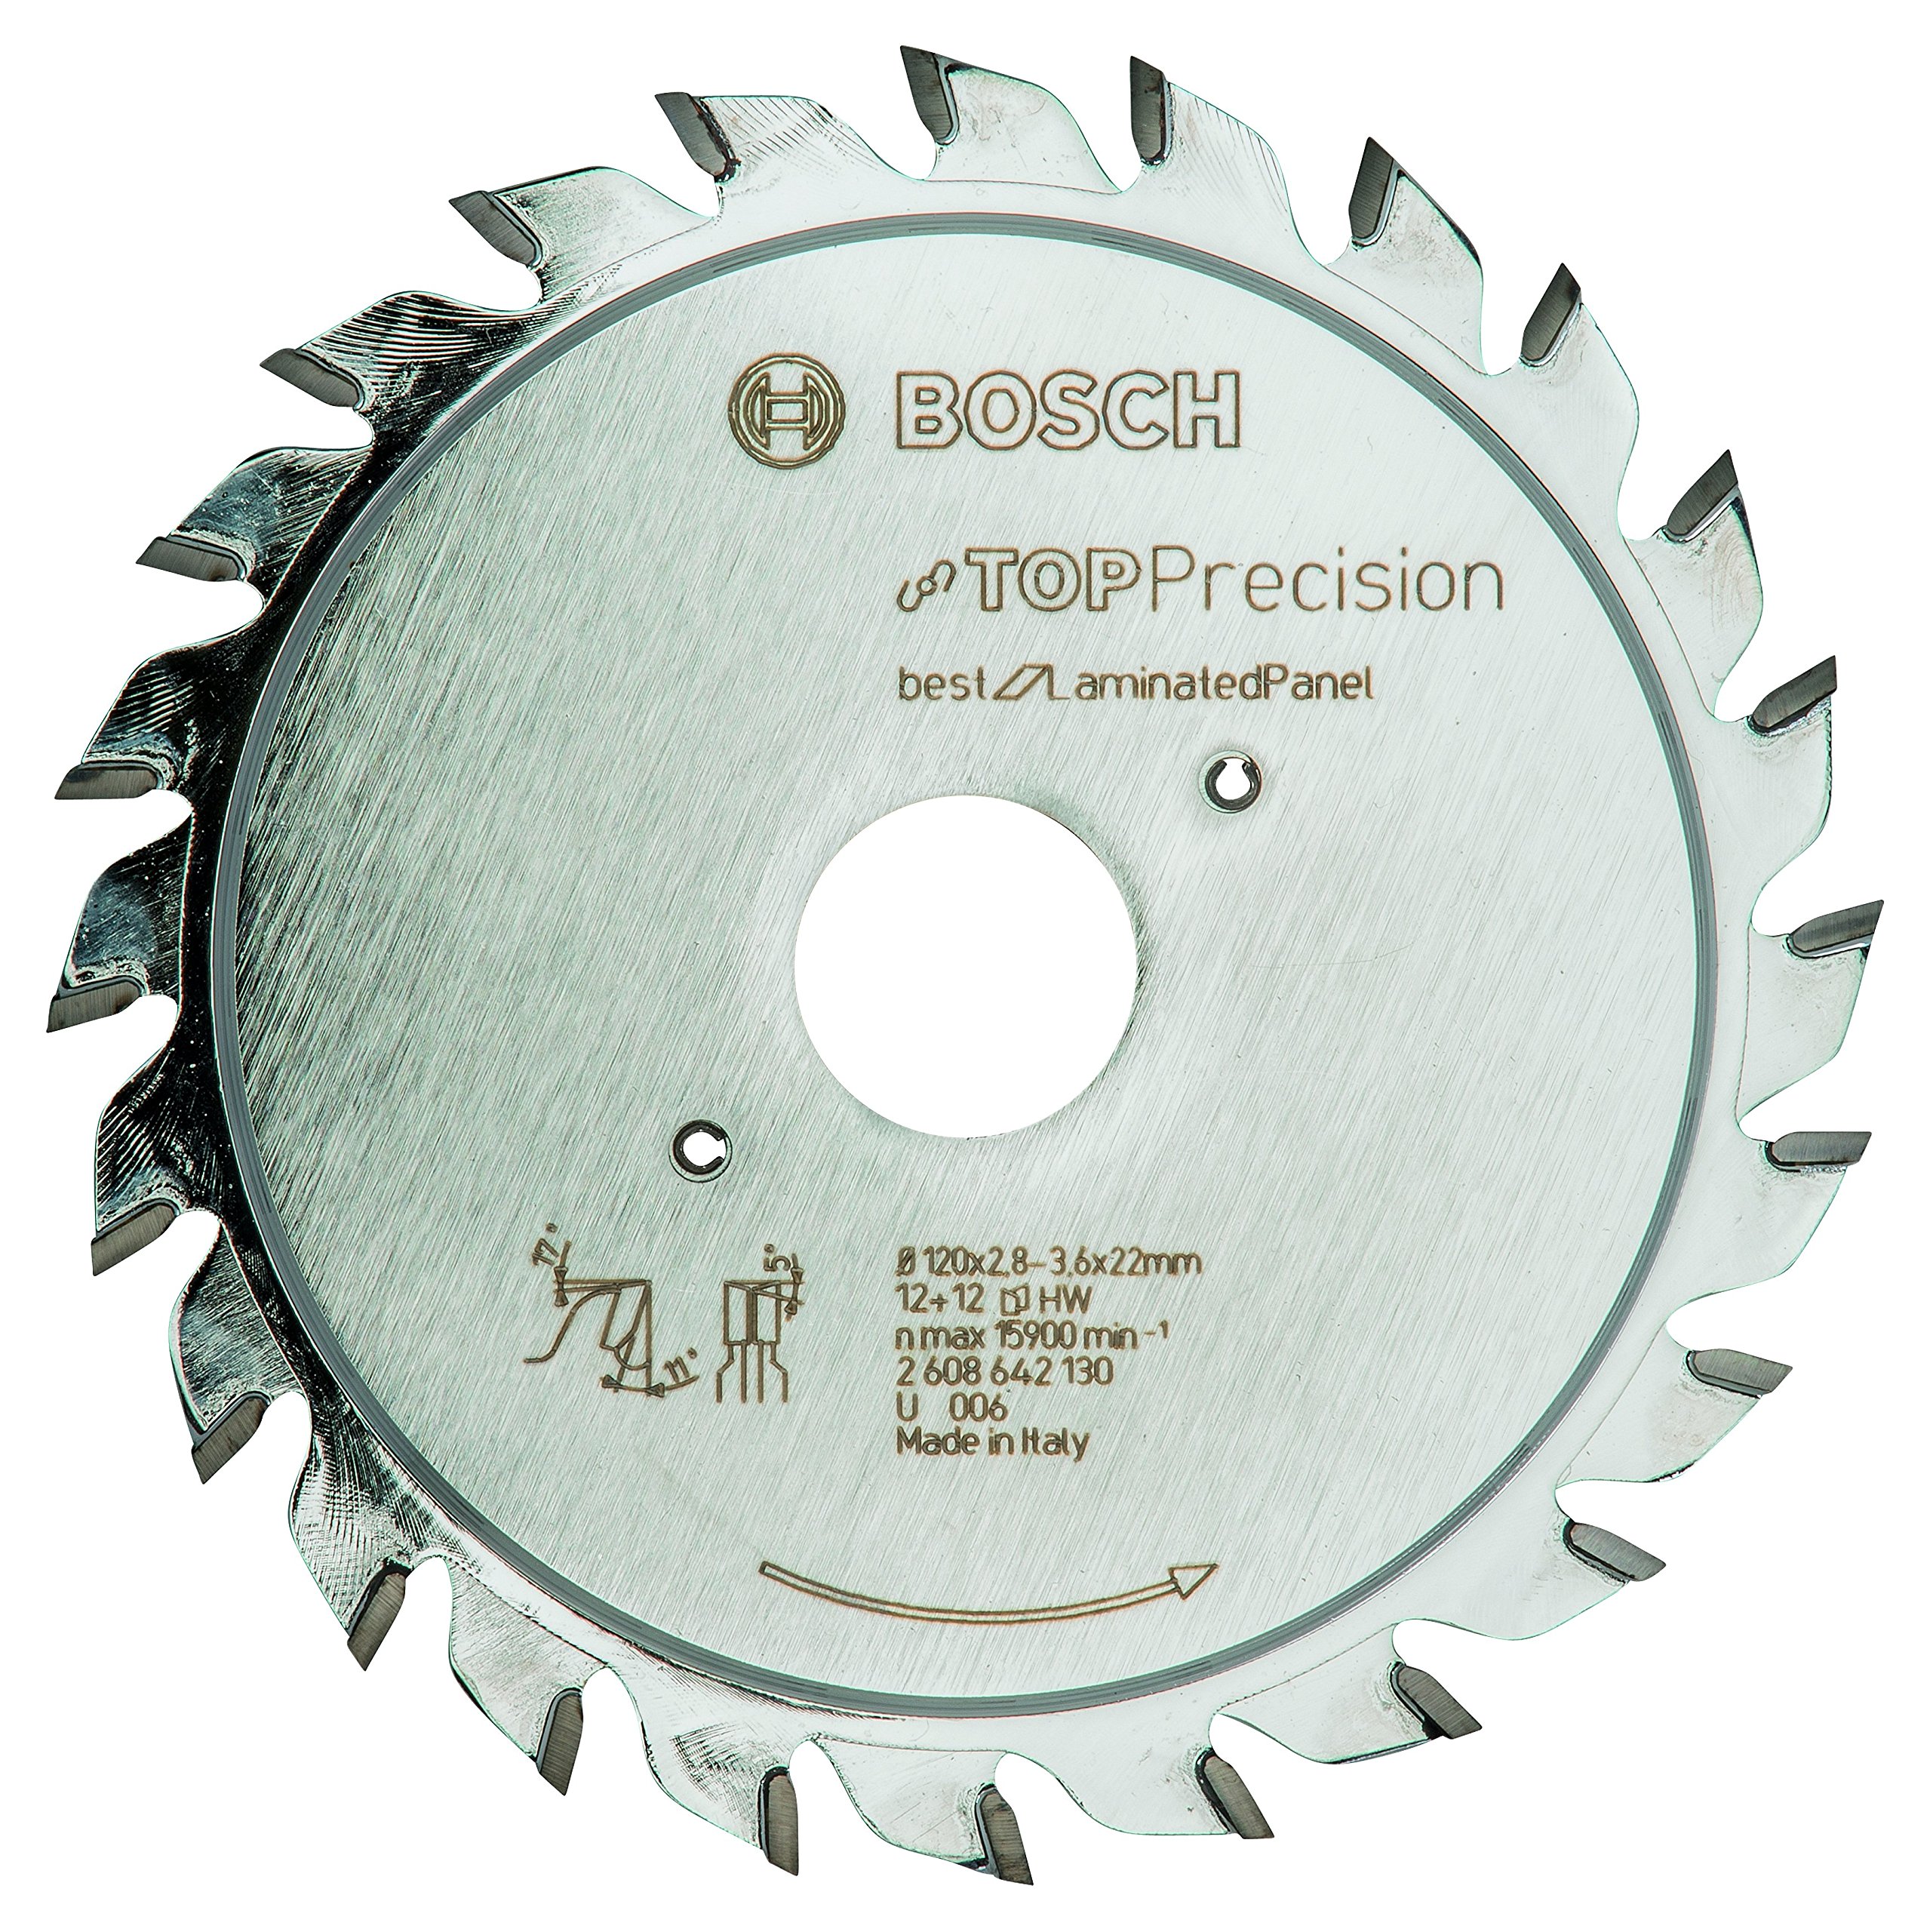 Bosch Professional Vorritzblatt Top Precision Best für Laminated Panel, 120 x 22 x 2,8 - 3,6 mm, 2608642130